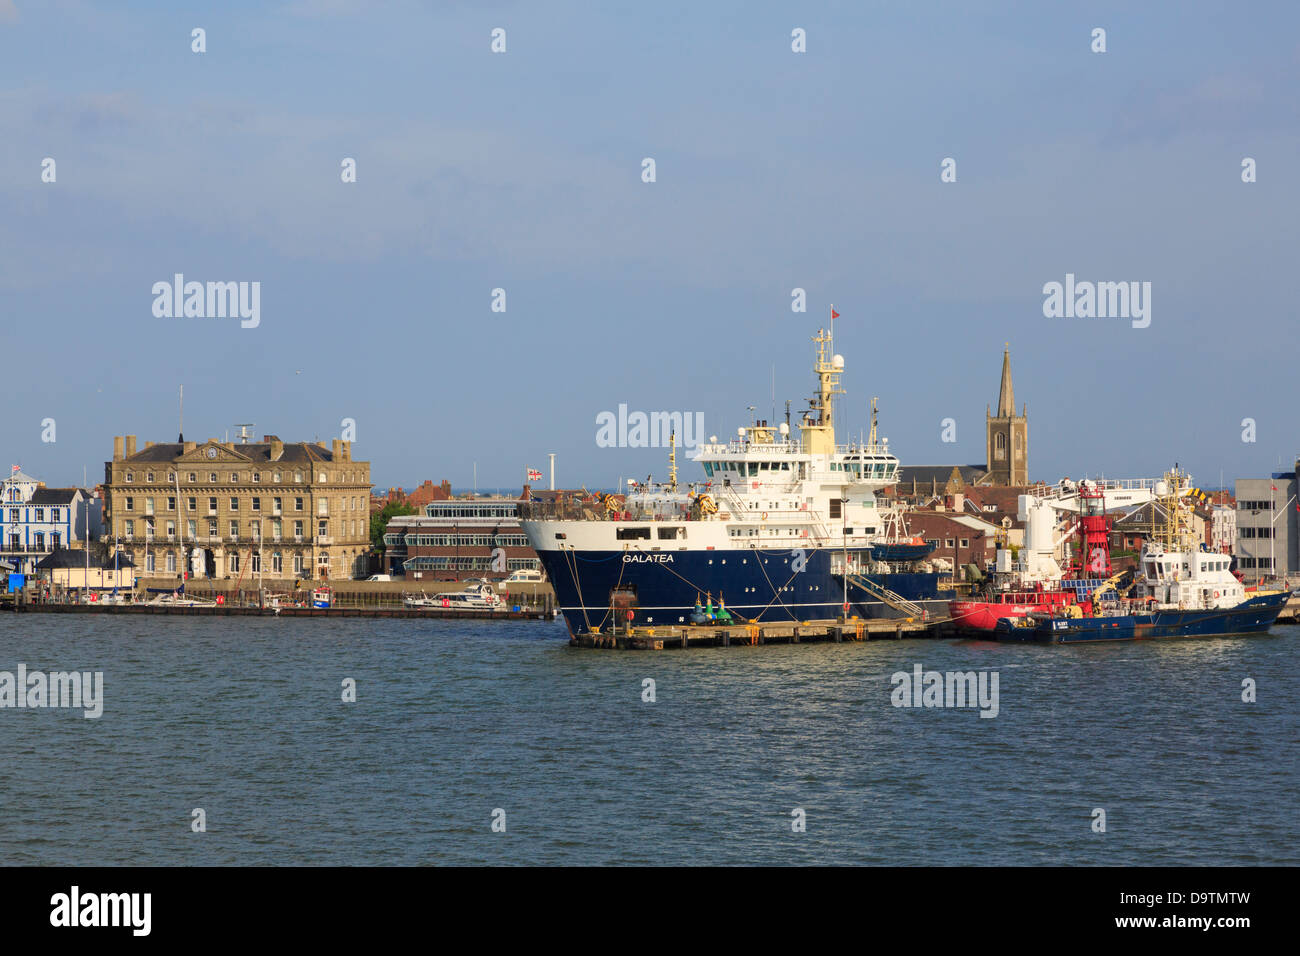 Vue sur mer mer à Trinity House THV Galatea navire amarré dans le port d'offres de Harwich, Essex, Angleterre, Royaume-Uni, Angleterre Banque D'Images